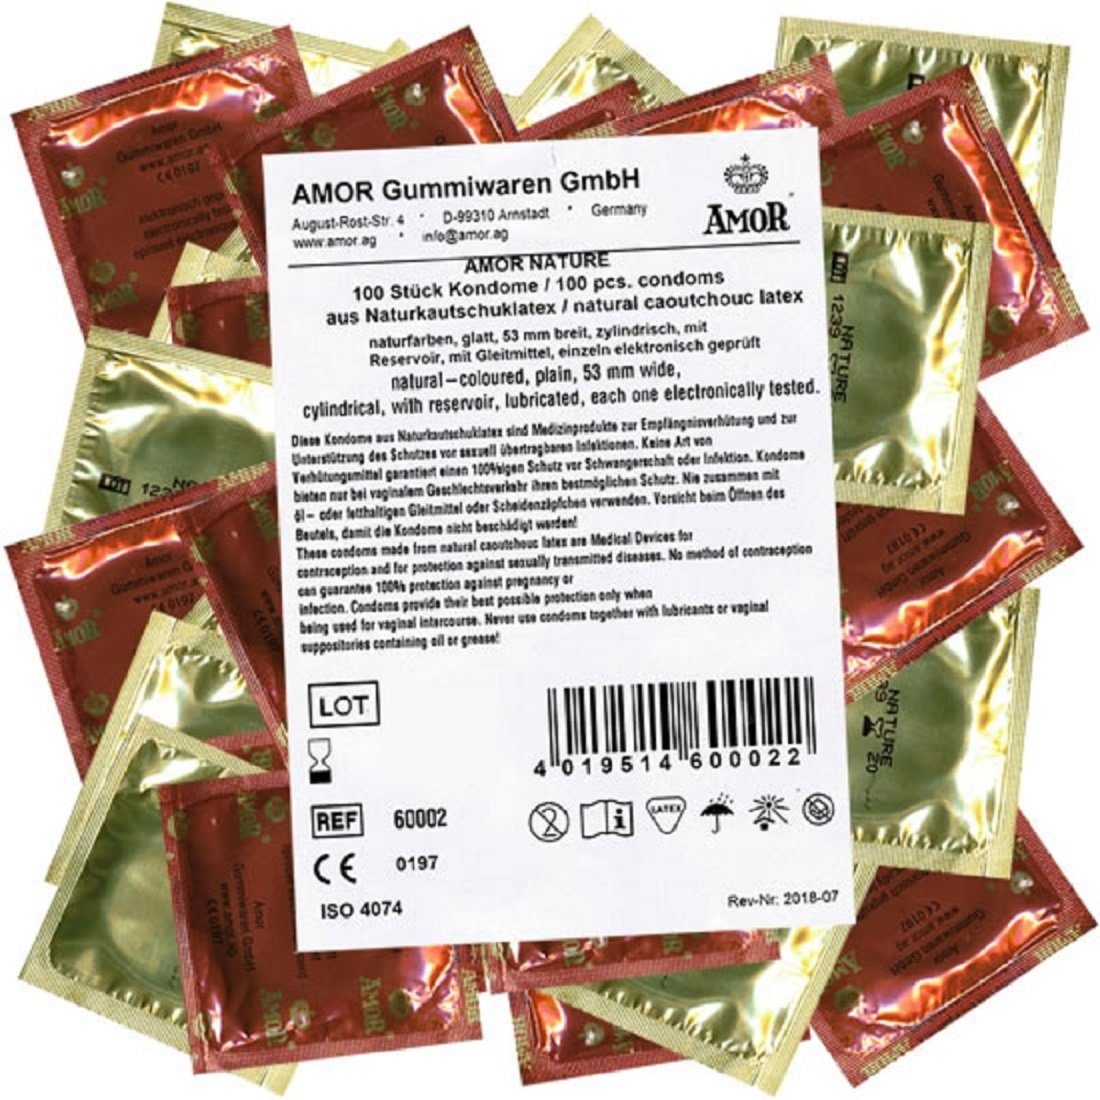 Gefühl Maxipack natürliches 100 Kondome intime für «Nature» Sicherheit und natürliche St., Kondome mit, Packung Amor Amor ein